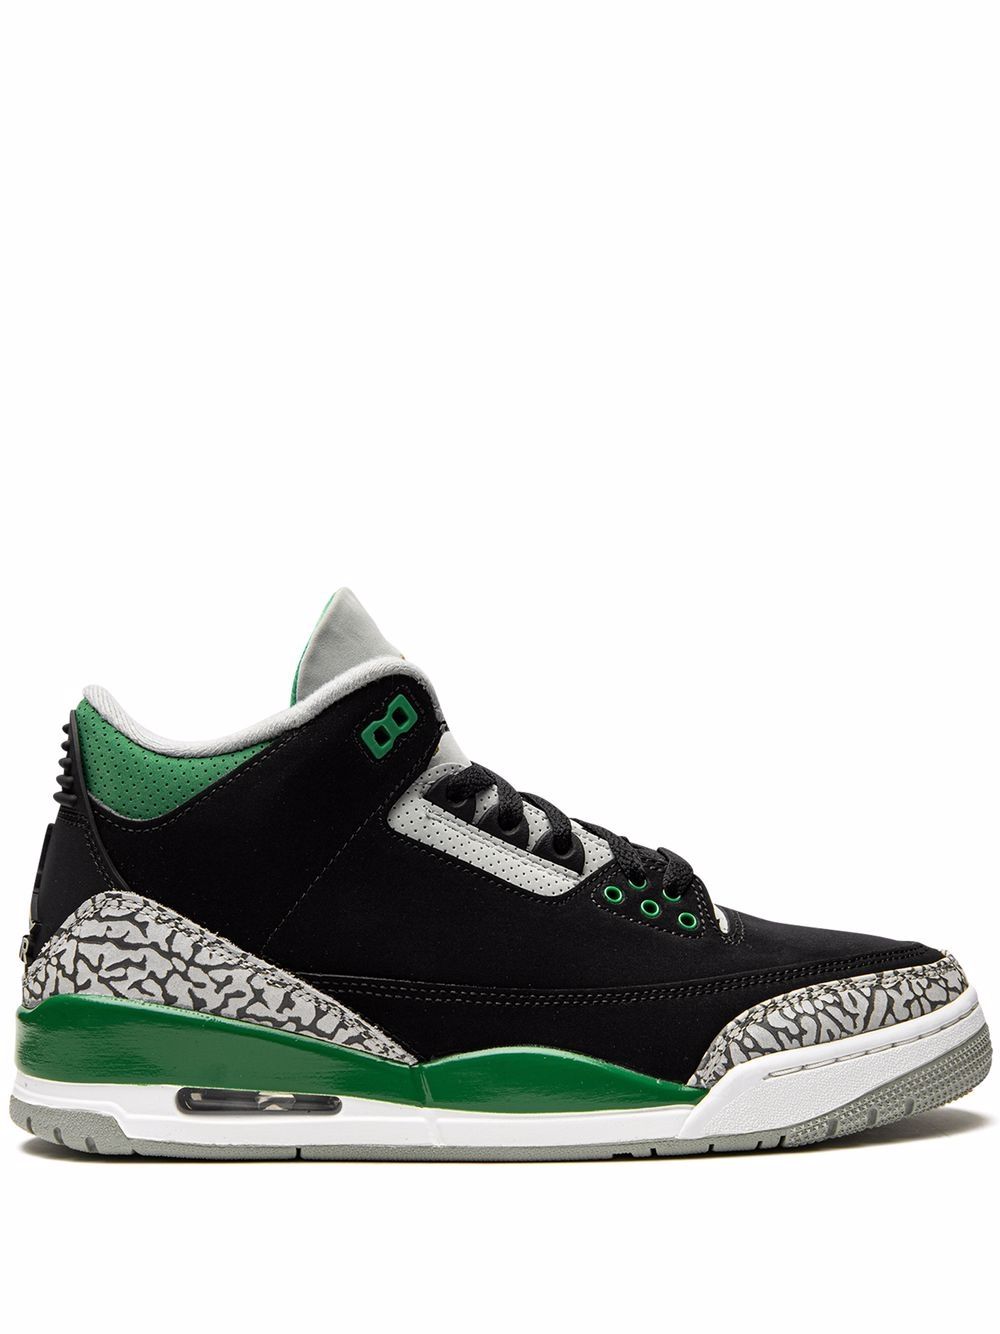 Jordan Air Jordan 3 Retro "Pine Green" sneakers - Black